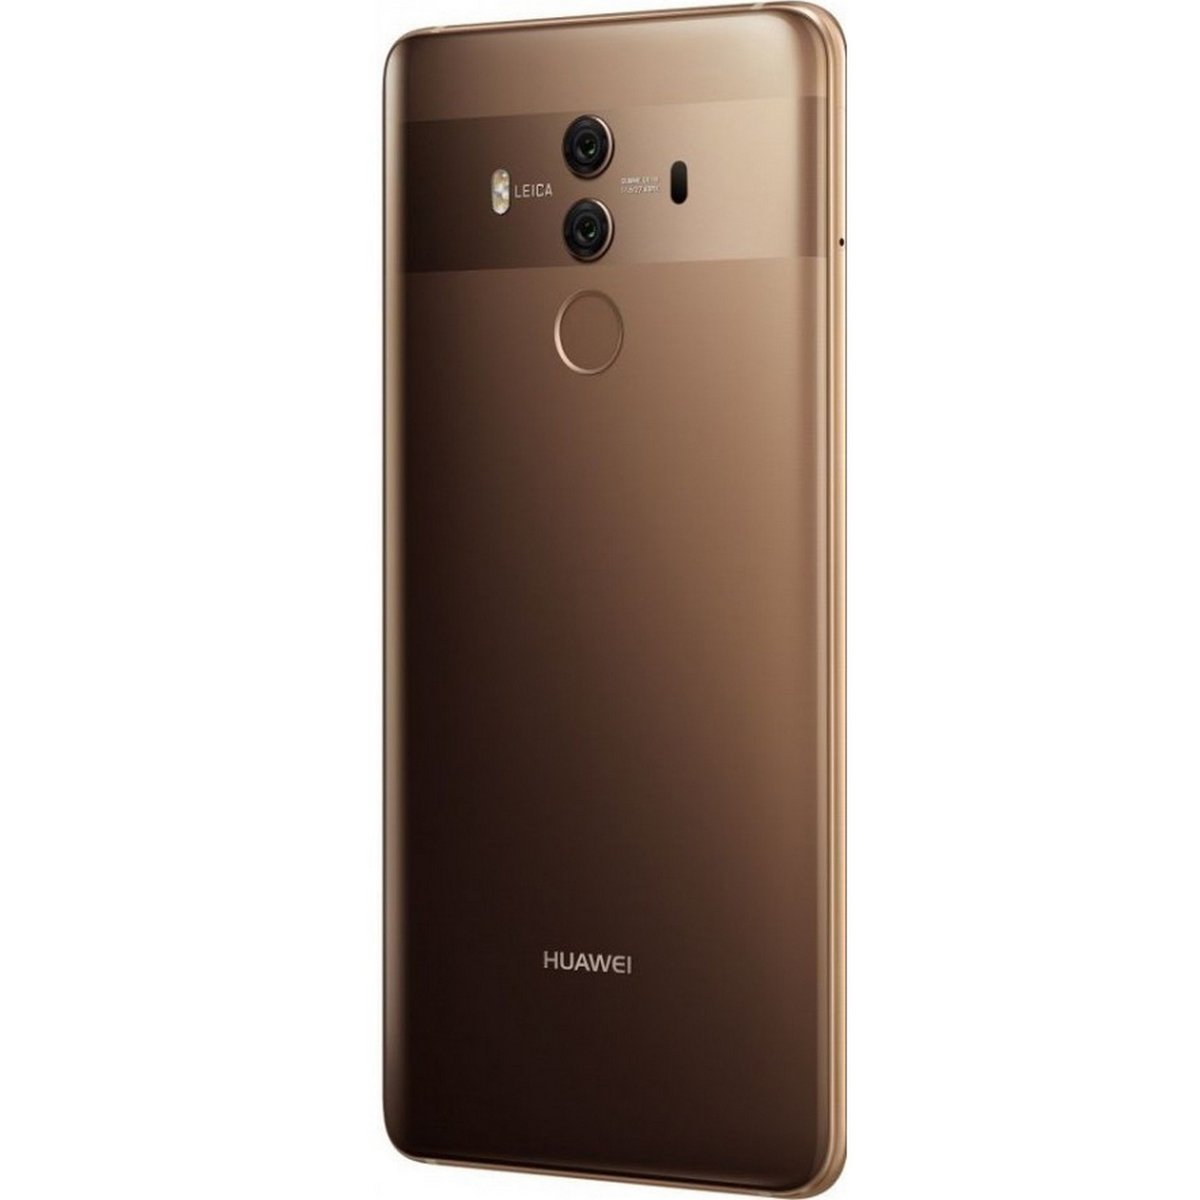 Huawei Mate 10 Pro Mocha Brown